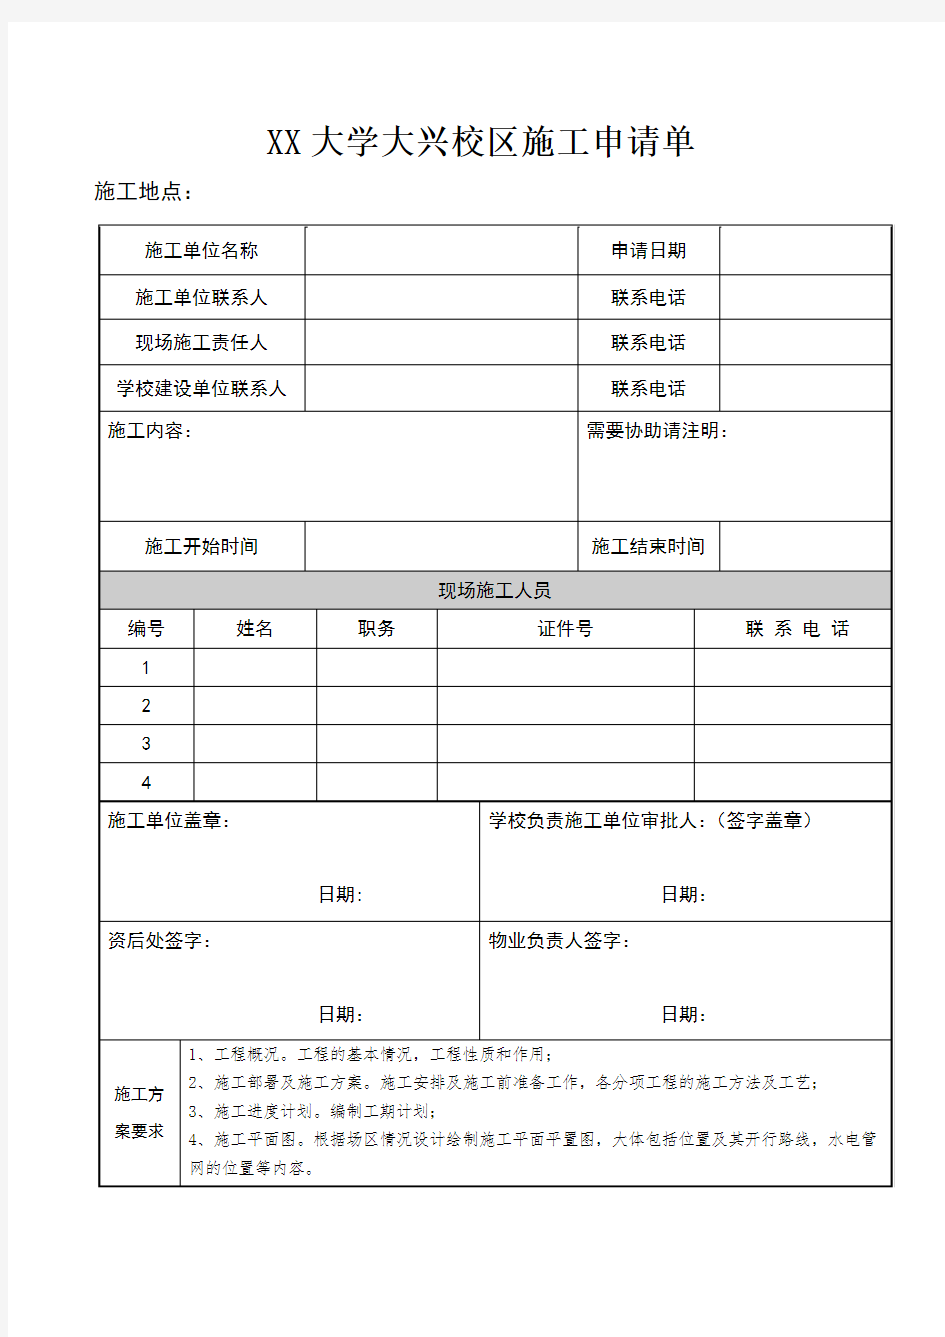 北京建筑大学大兴校区施工申请单【模板】